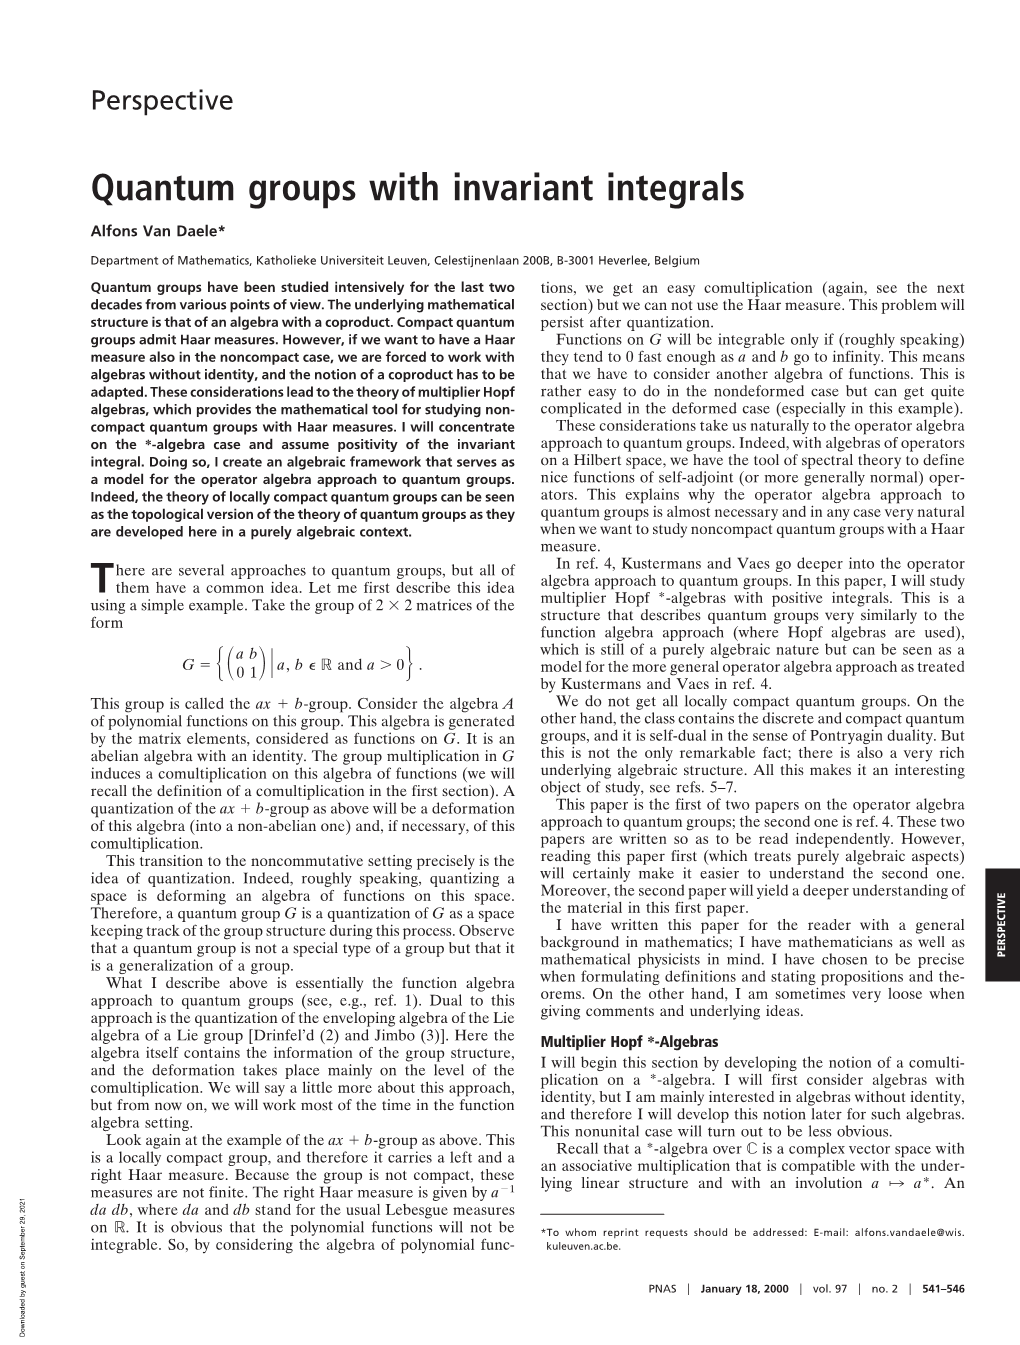 Quantum Groups with Invariant Integrals